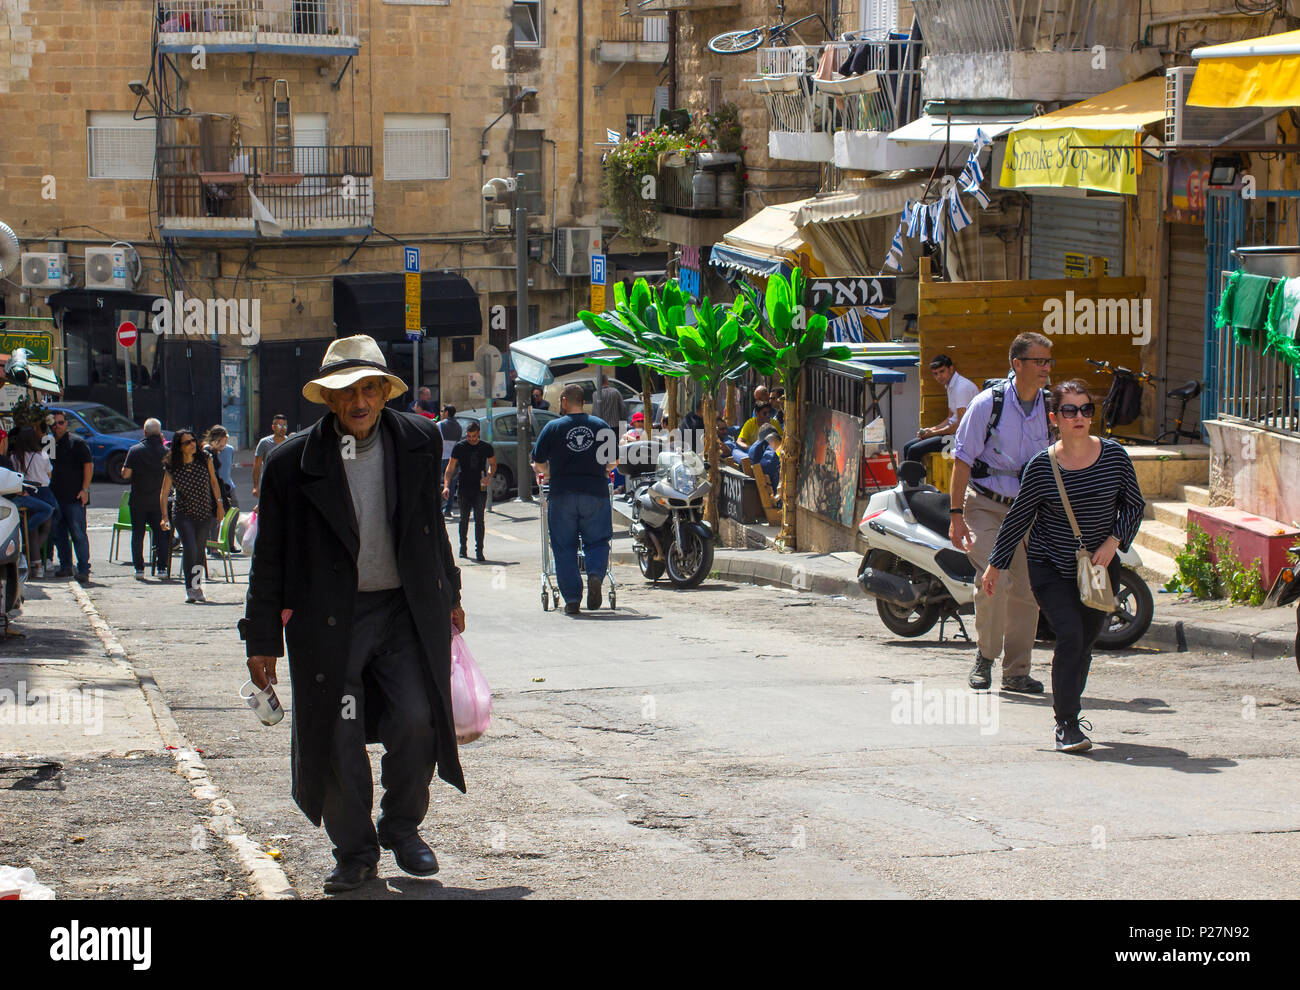 9 mai 2018 Un homme d'âge mûr d'un long manteau sombre et floppy hat faisant son chemin jusqu'à une colline à l'animation de la rue du marché Mahane Yehuda à Jérusalem Israël Banque D'Images